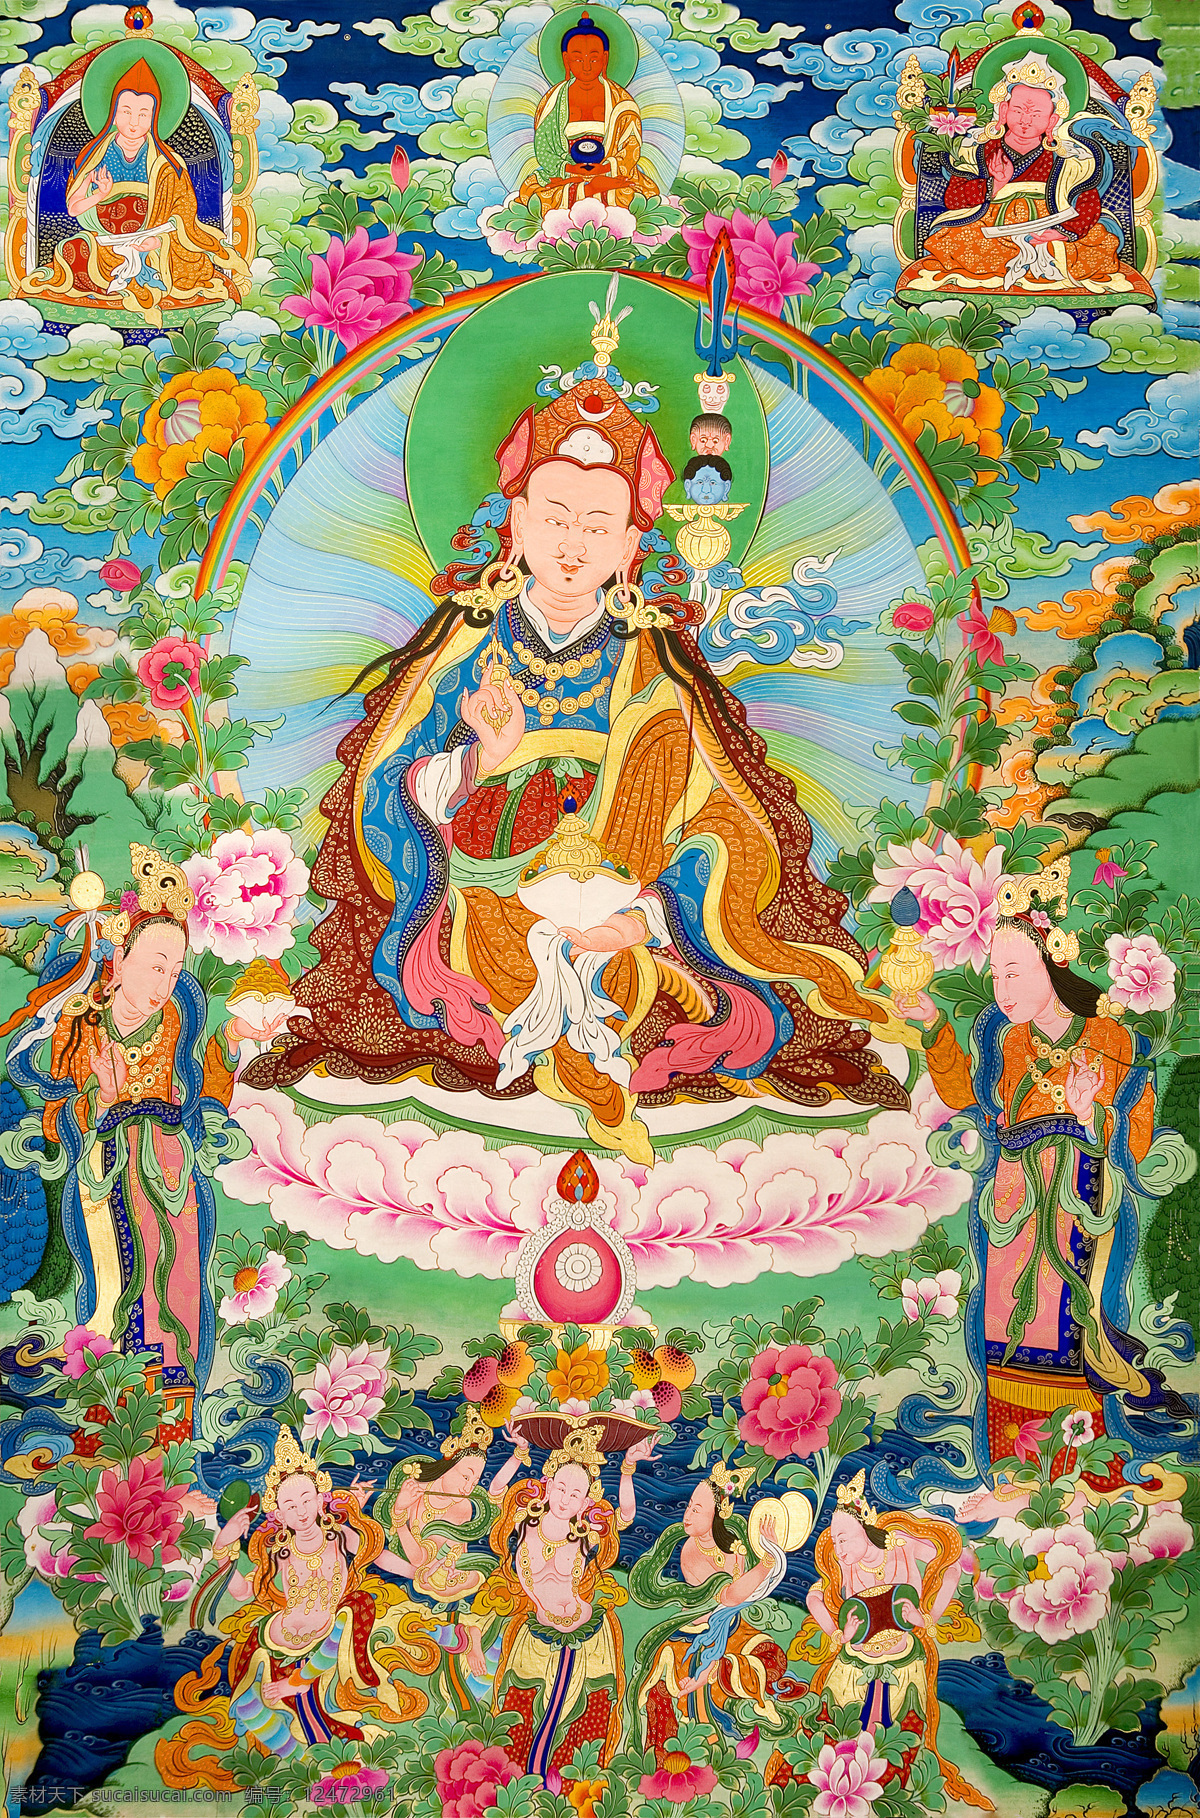 坐在 花台 上 神仙 唐卡 彩绘 佛教 卷轴画 宗教 书画文字 文化艺术